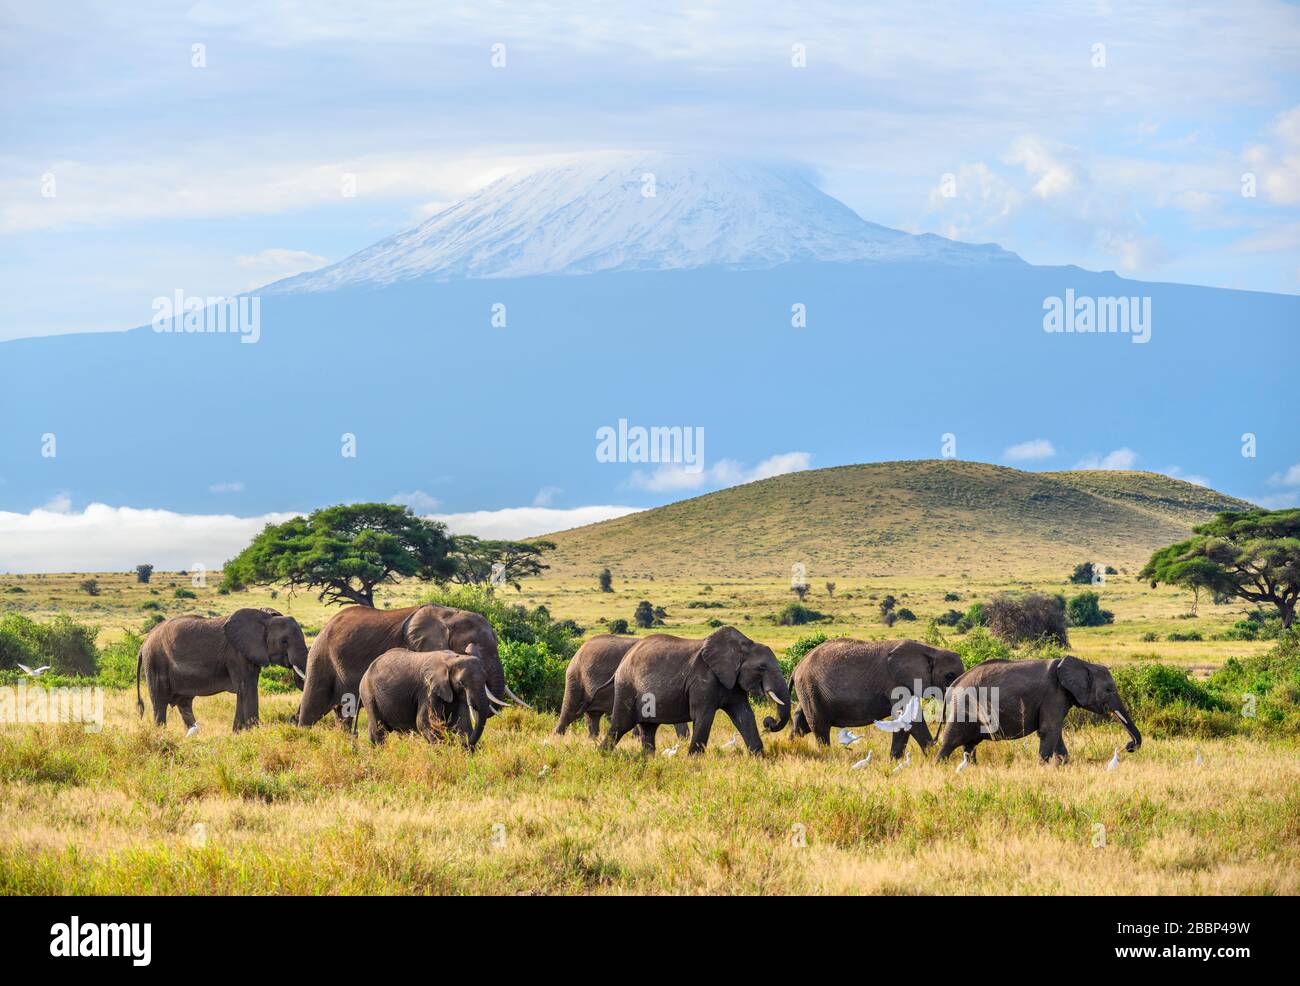 Troupeau d'éléphants de brousse africains (Loxodonta africana) avec le mont Kilimandjaro derrière, Parc national d'Amboseli, Kenya, Afrique Banque D'Images